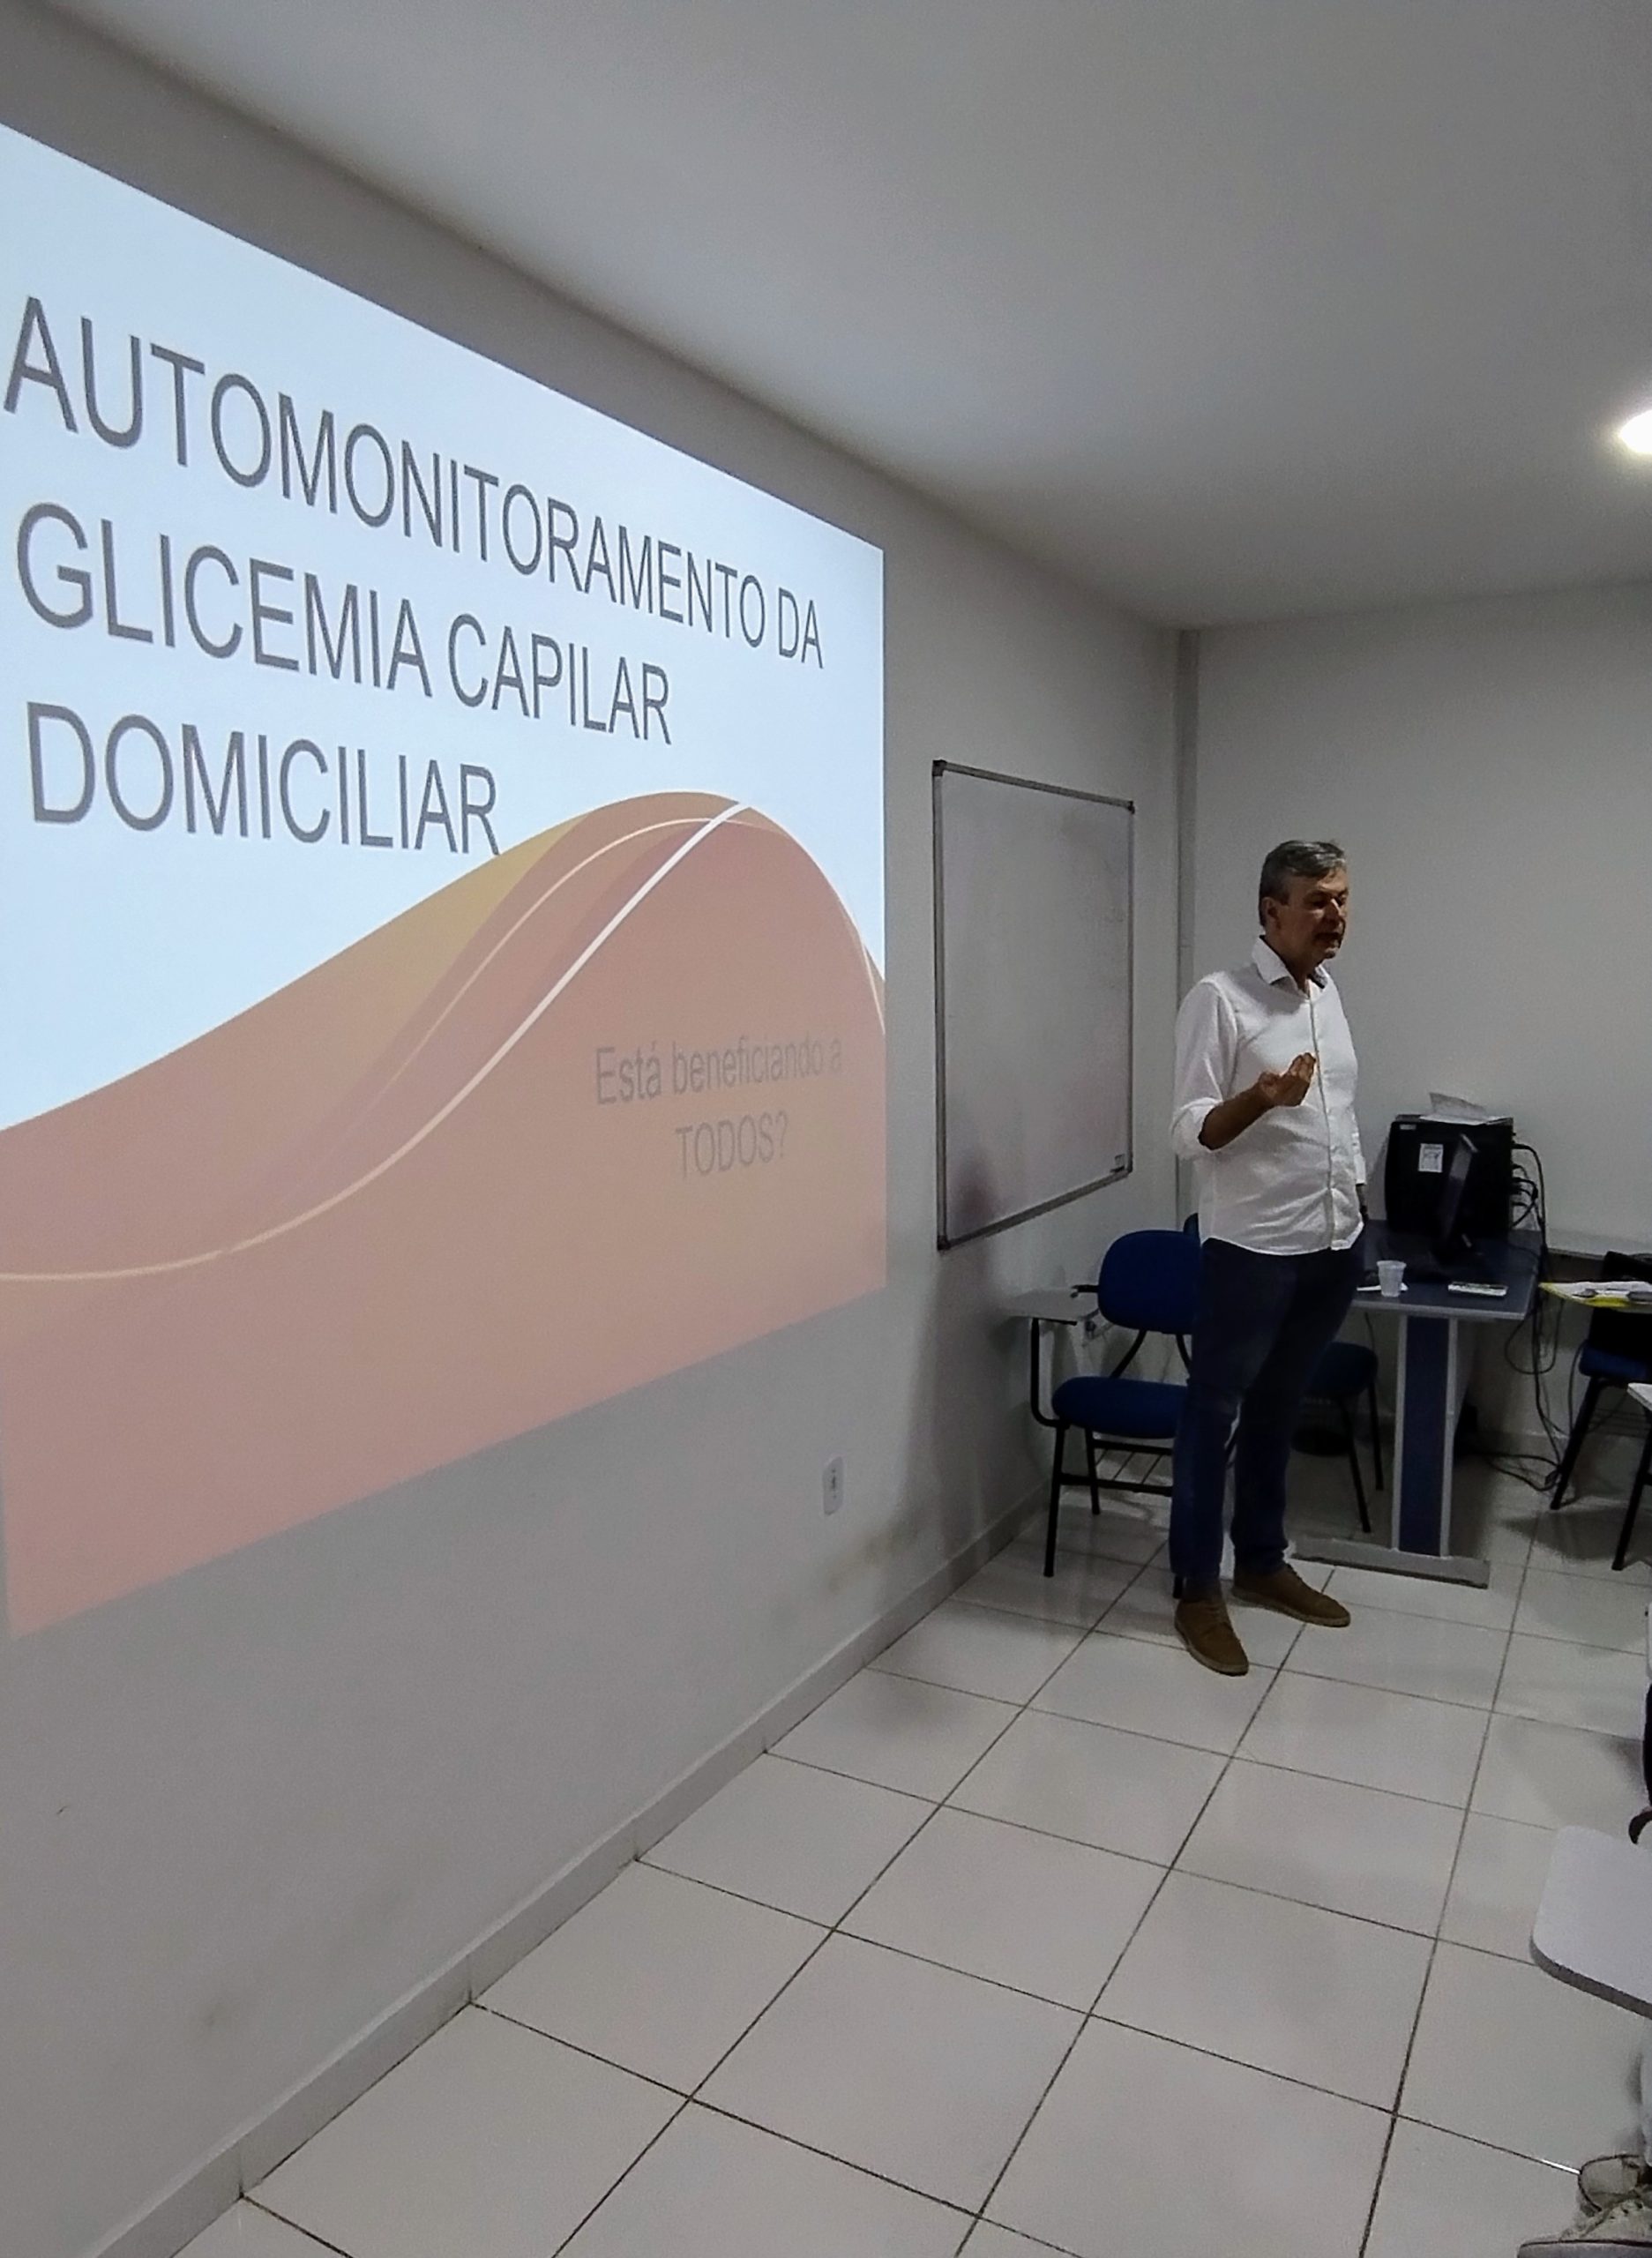 Prefeitura de São Pedro da Aldeia promove capacitação sobre automonitoramento glicêmico